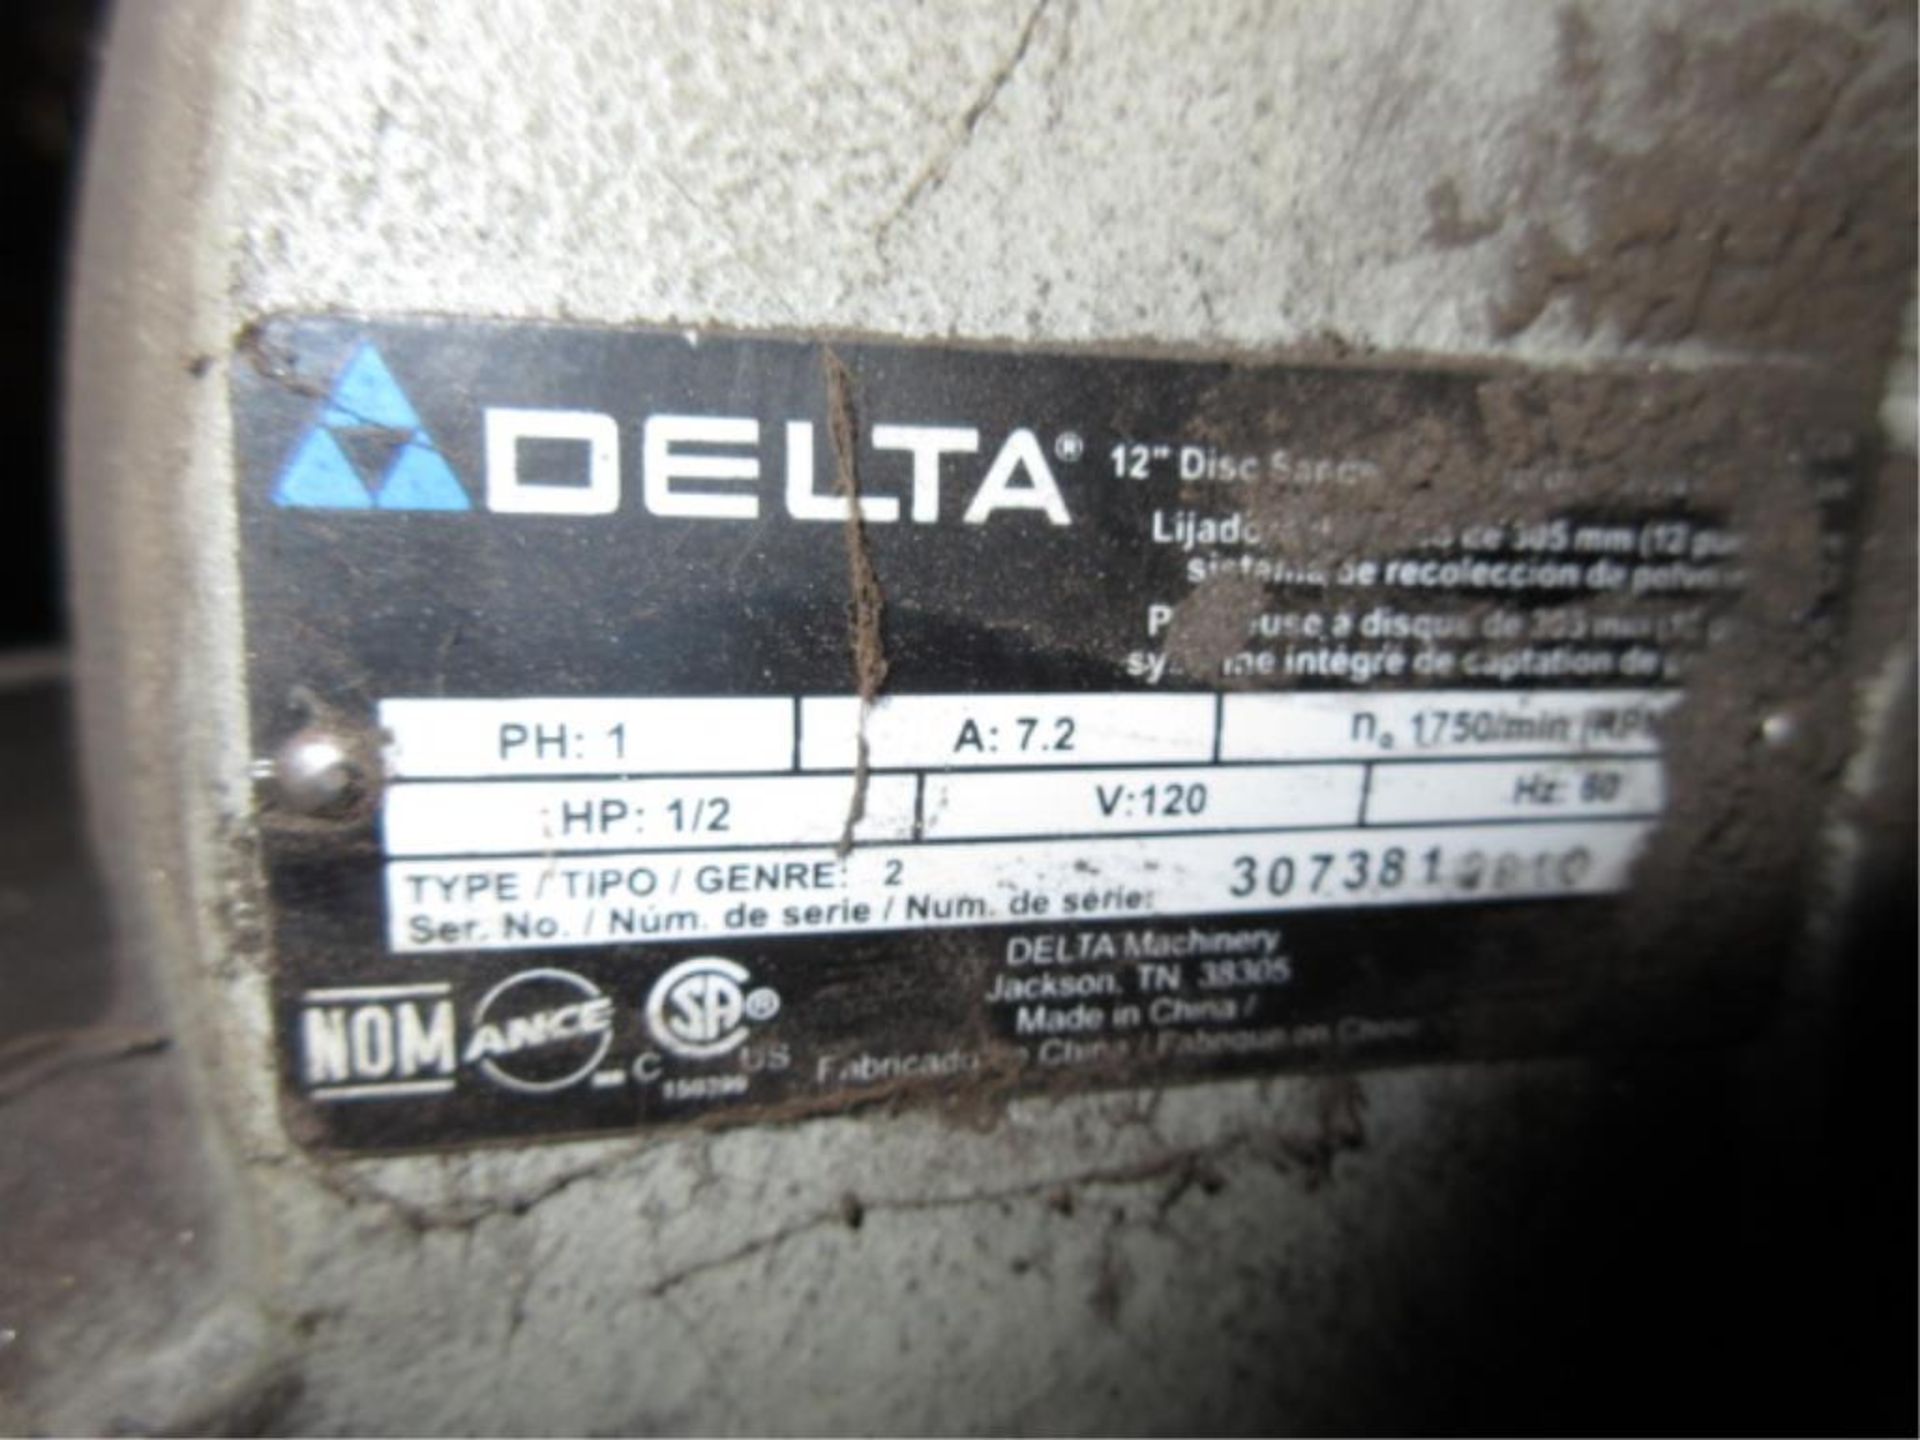 Delta Disc Sander. Delta 12" Disc Sander, (2010), 1/2 hp, includes pedestal, 120VAC. SN# 307381. - Image 4 of 4